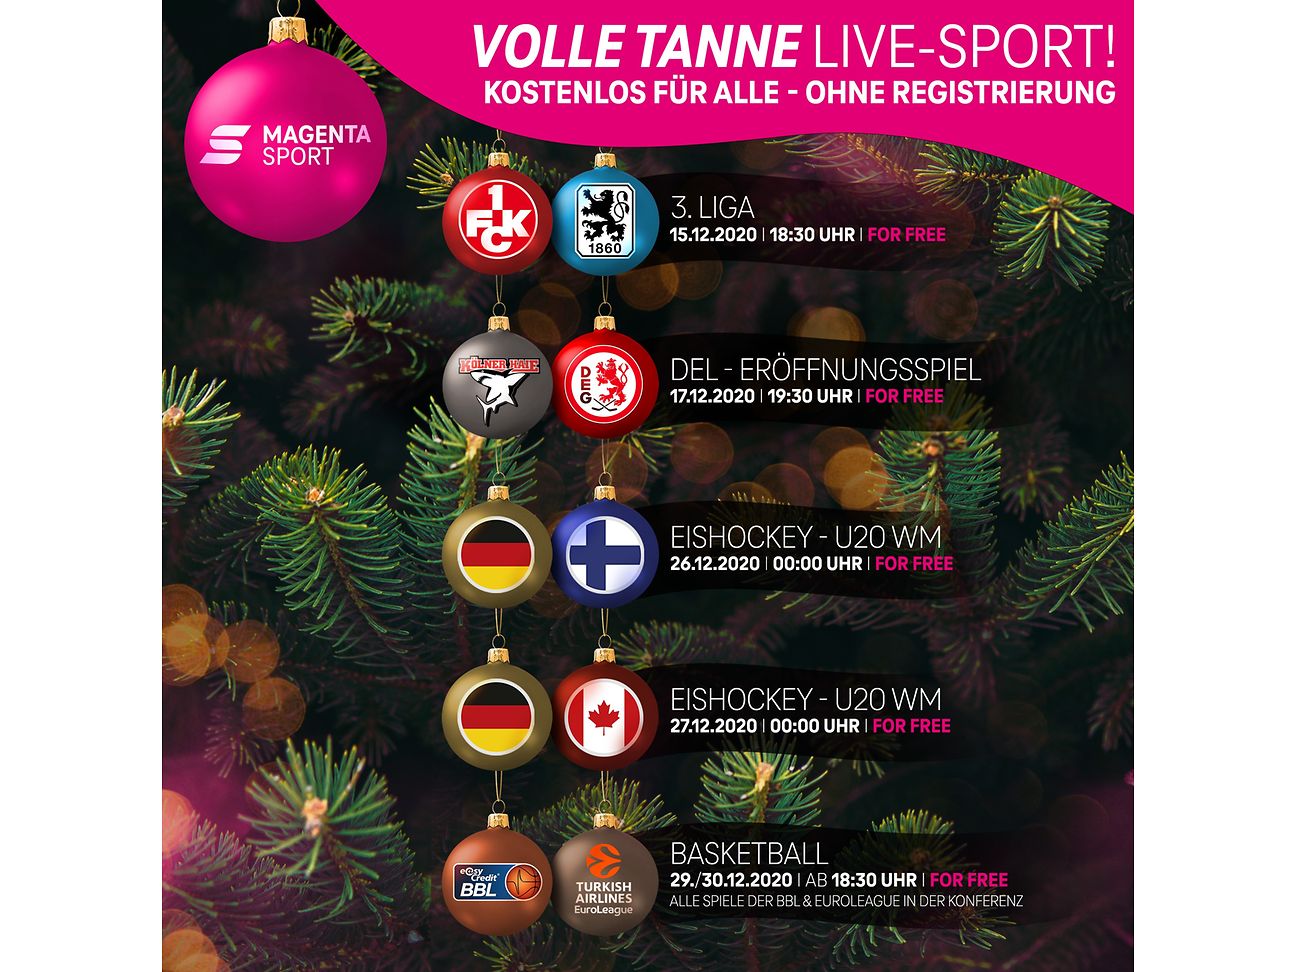 Livesport-Highlights bei MagentaSport als Free-TV Angebot Deutsche Telekom